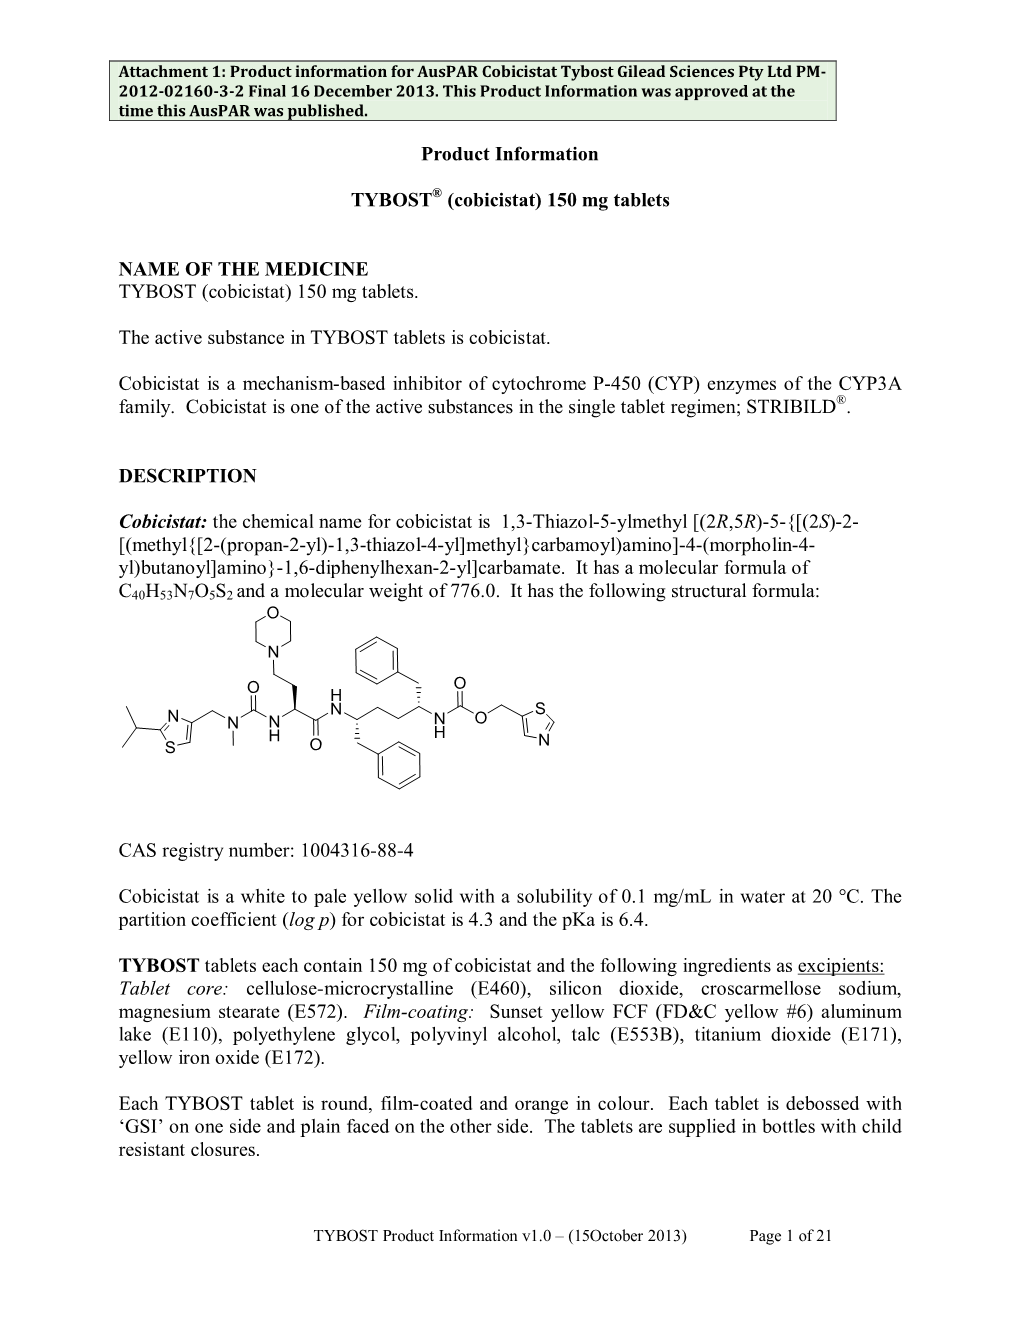 Attachment 1: Product Information for Auspar Cobicistat Tybost Gilead Sciences Pty Ltd PM- 2012-02160-3-2 Final 16 December 2013